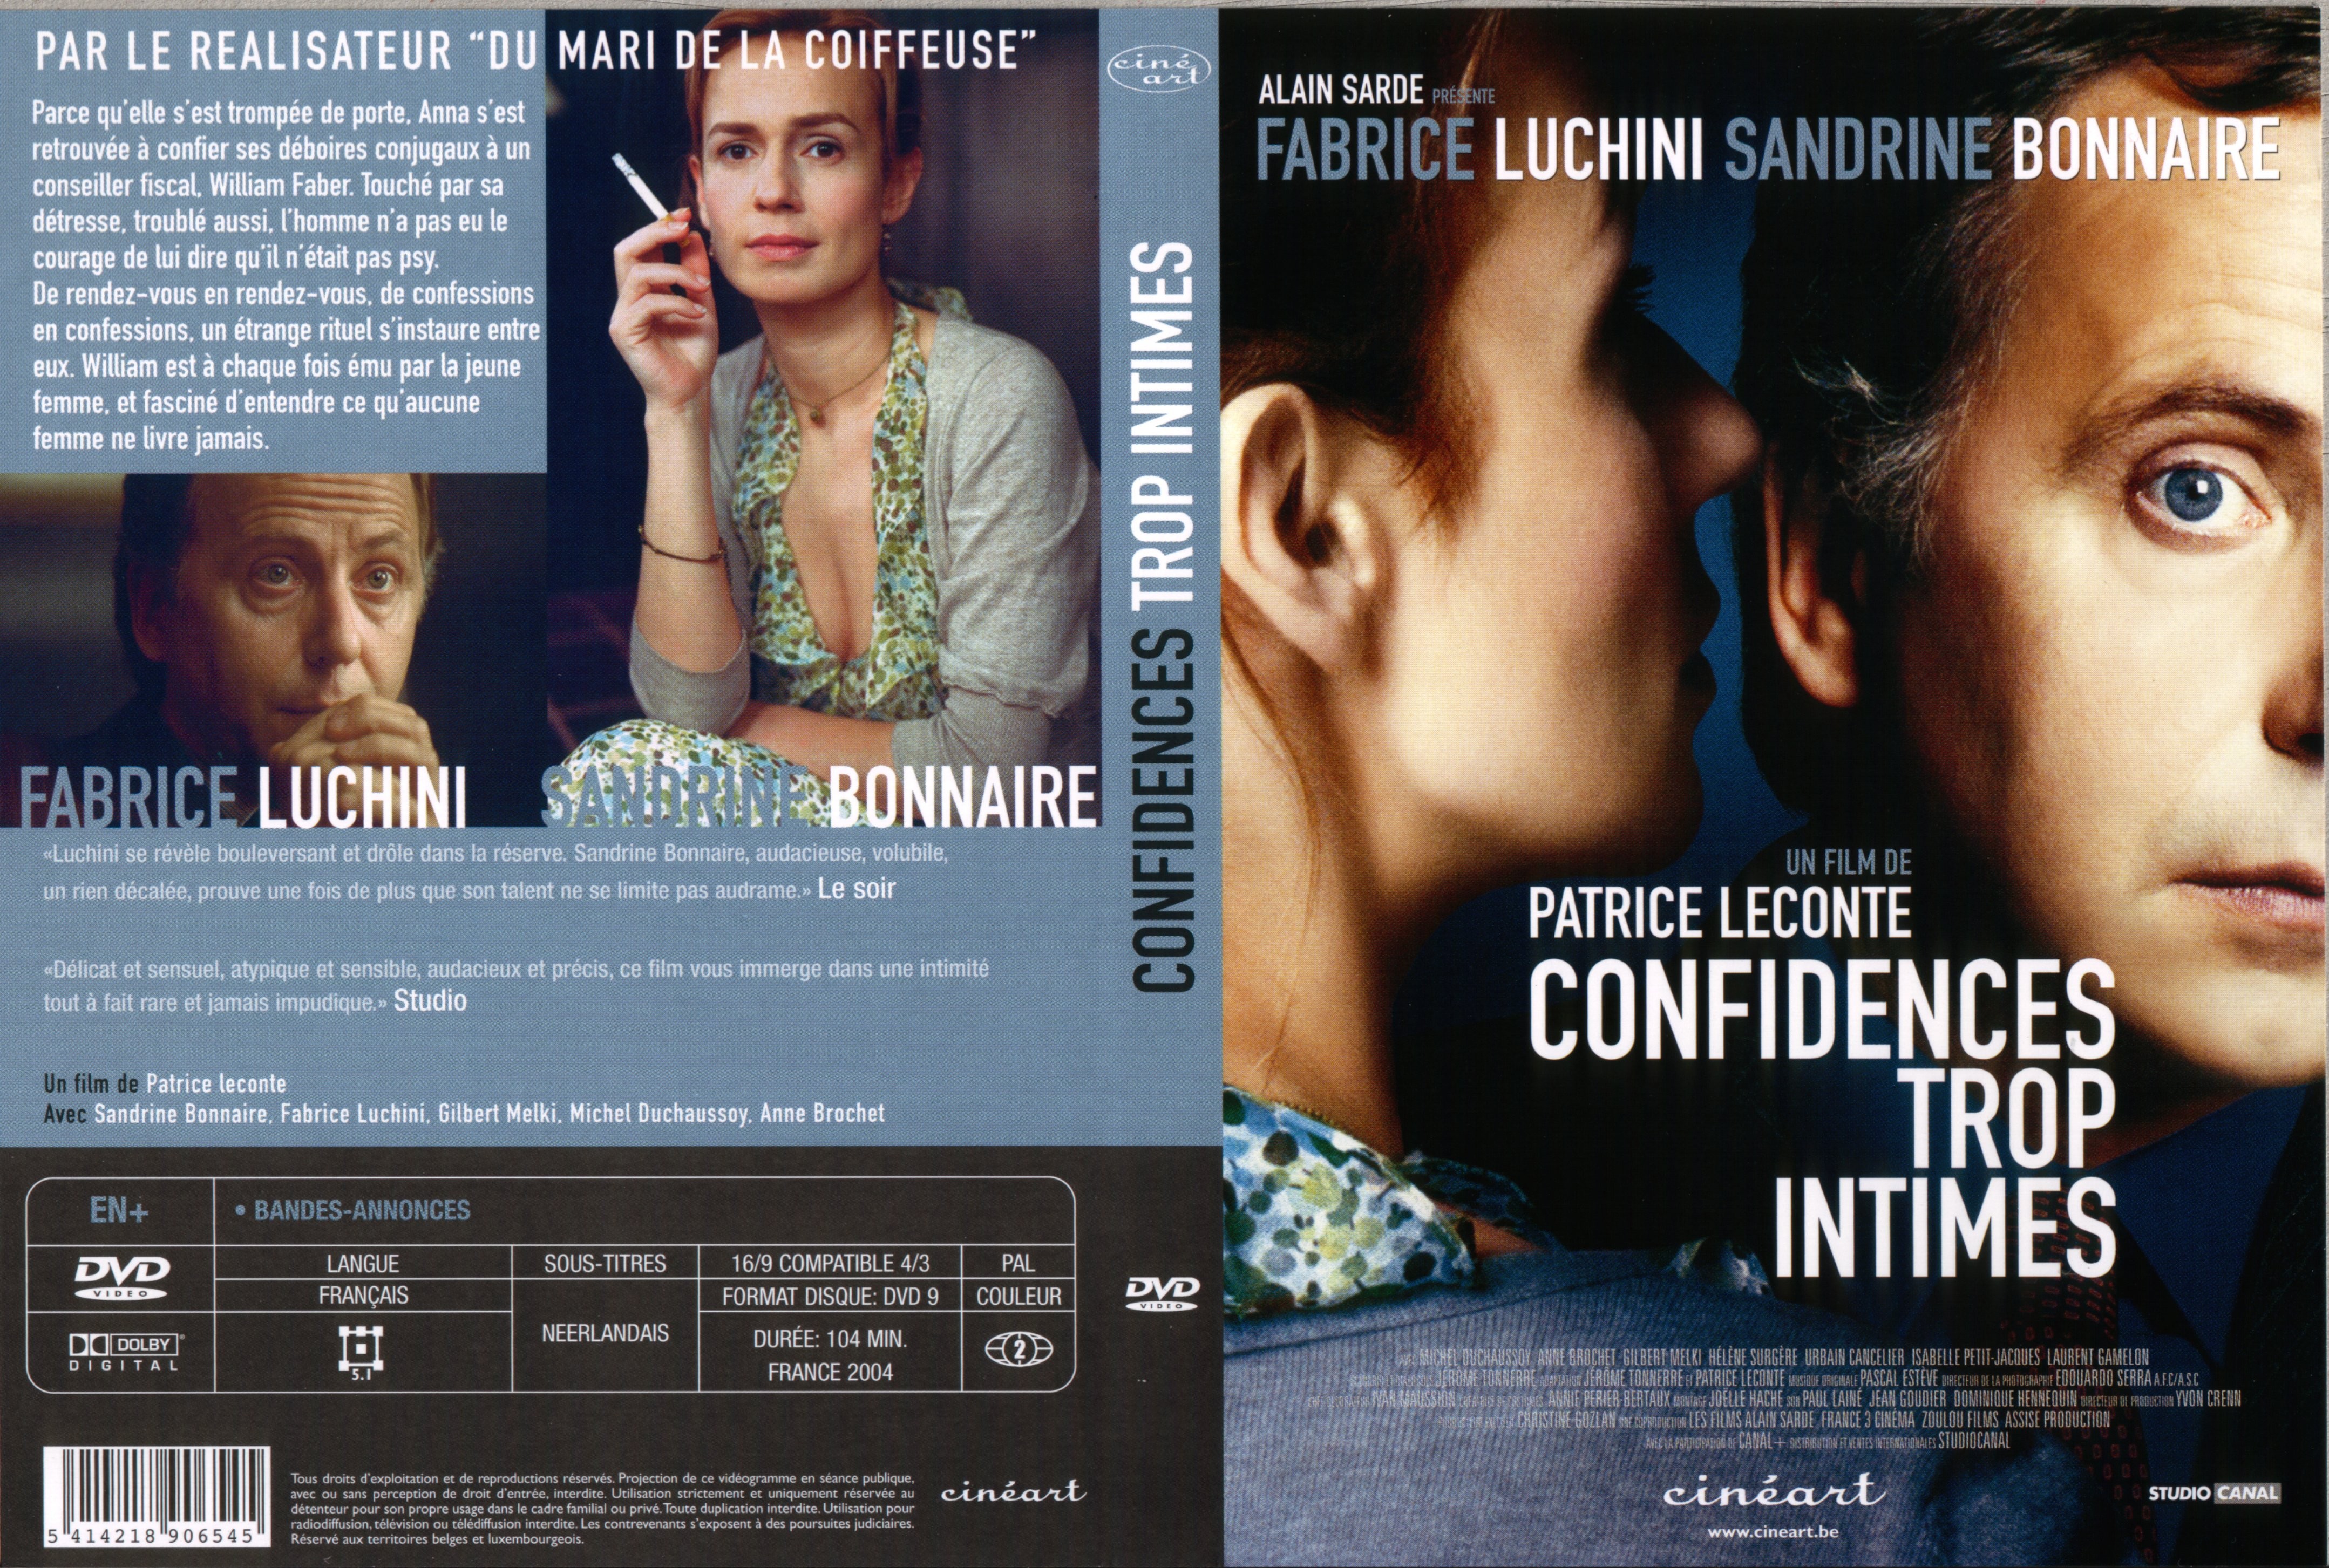 Jaquette DVD de Confidences trop intimes v2 Cinéma Passion